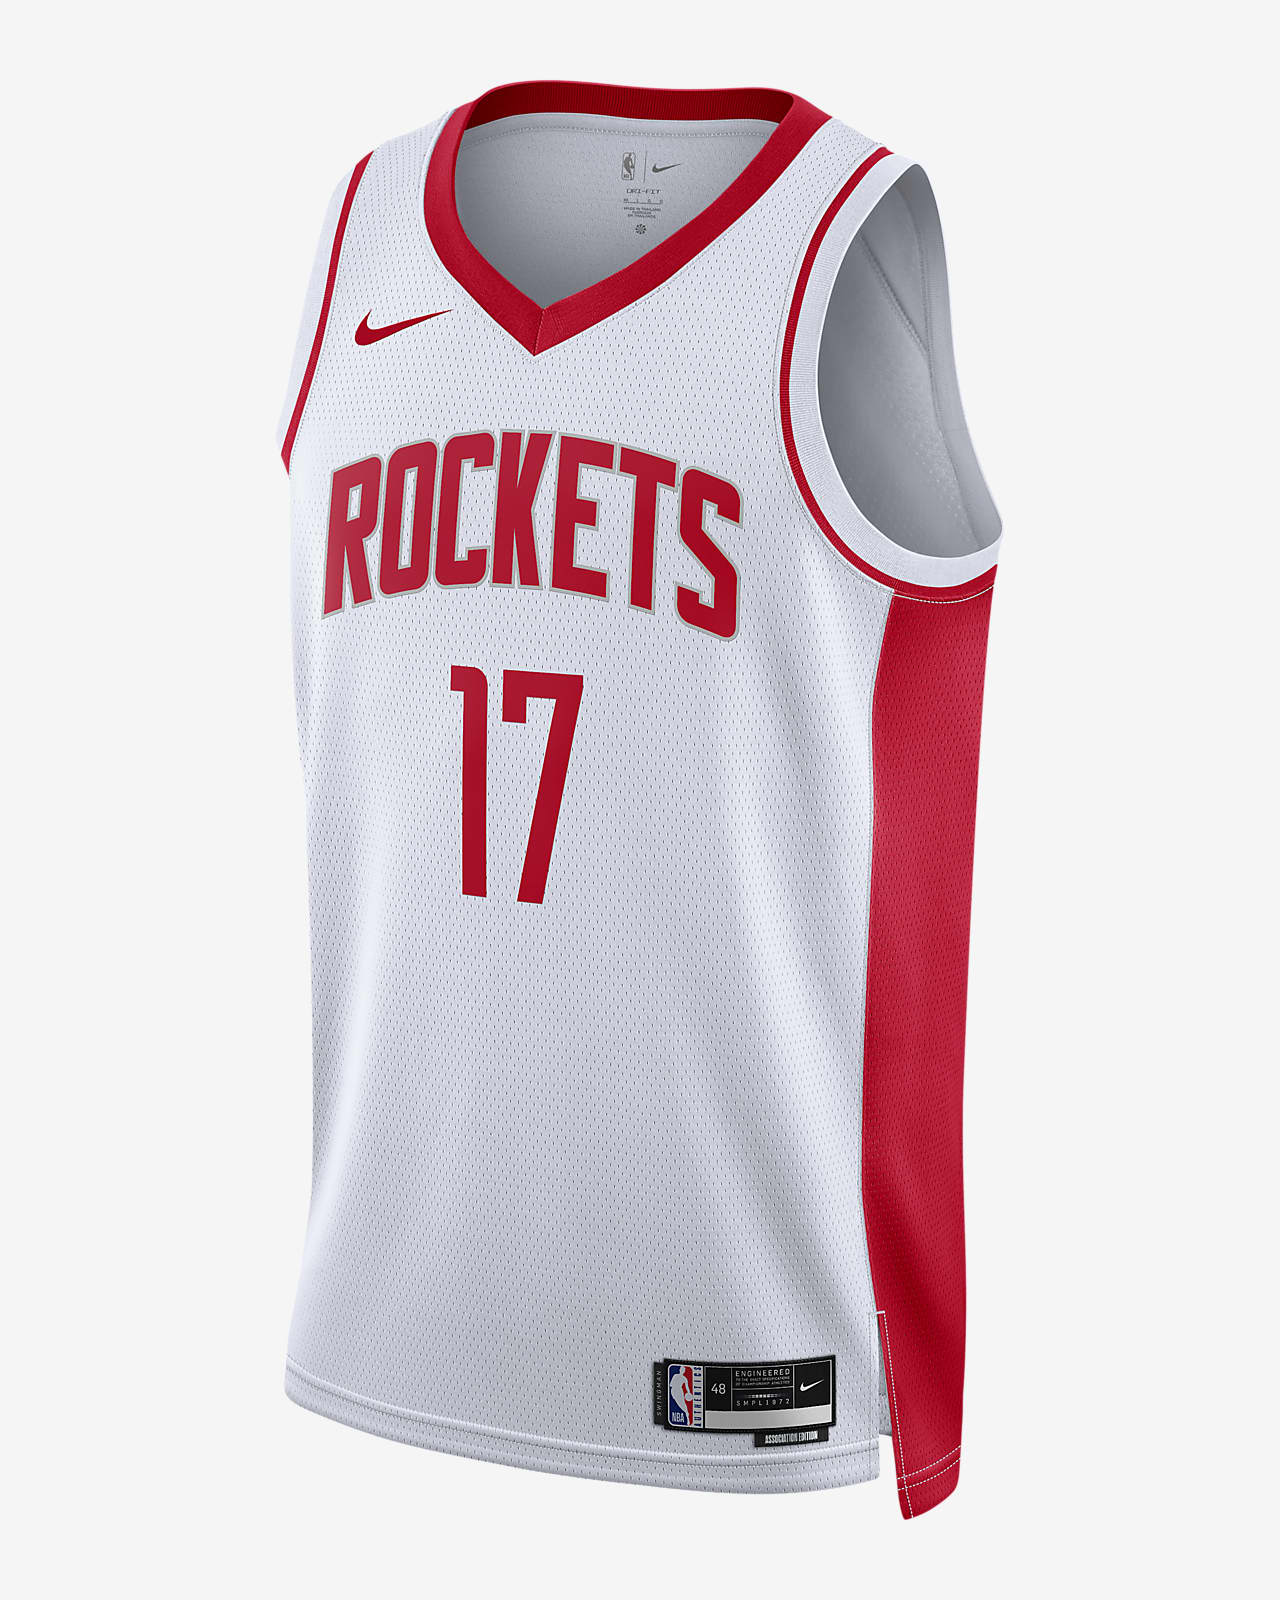 2022/23 赛季休斯顿火箭队 Association Edition Nike Dri-FIT NBA Swingman Jersey 男子透气速干球衣